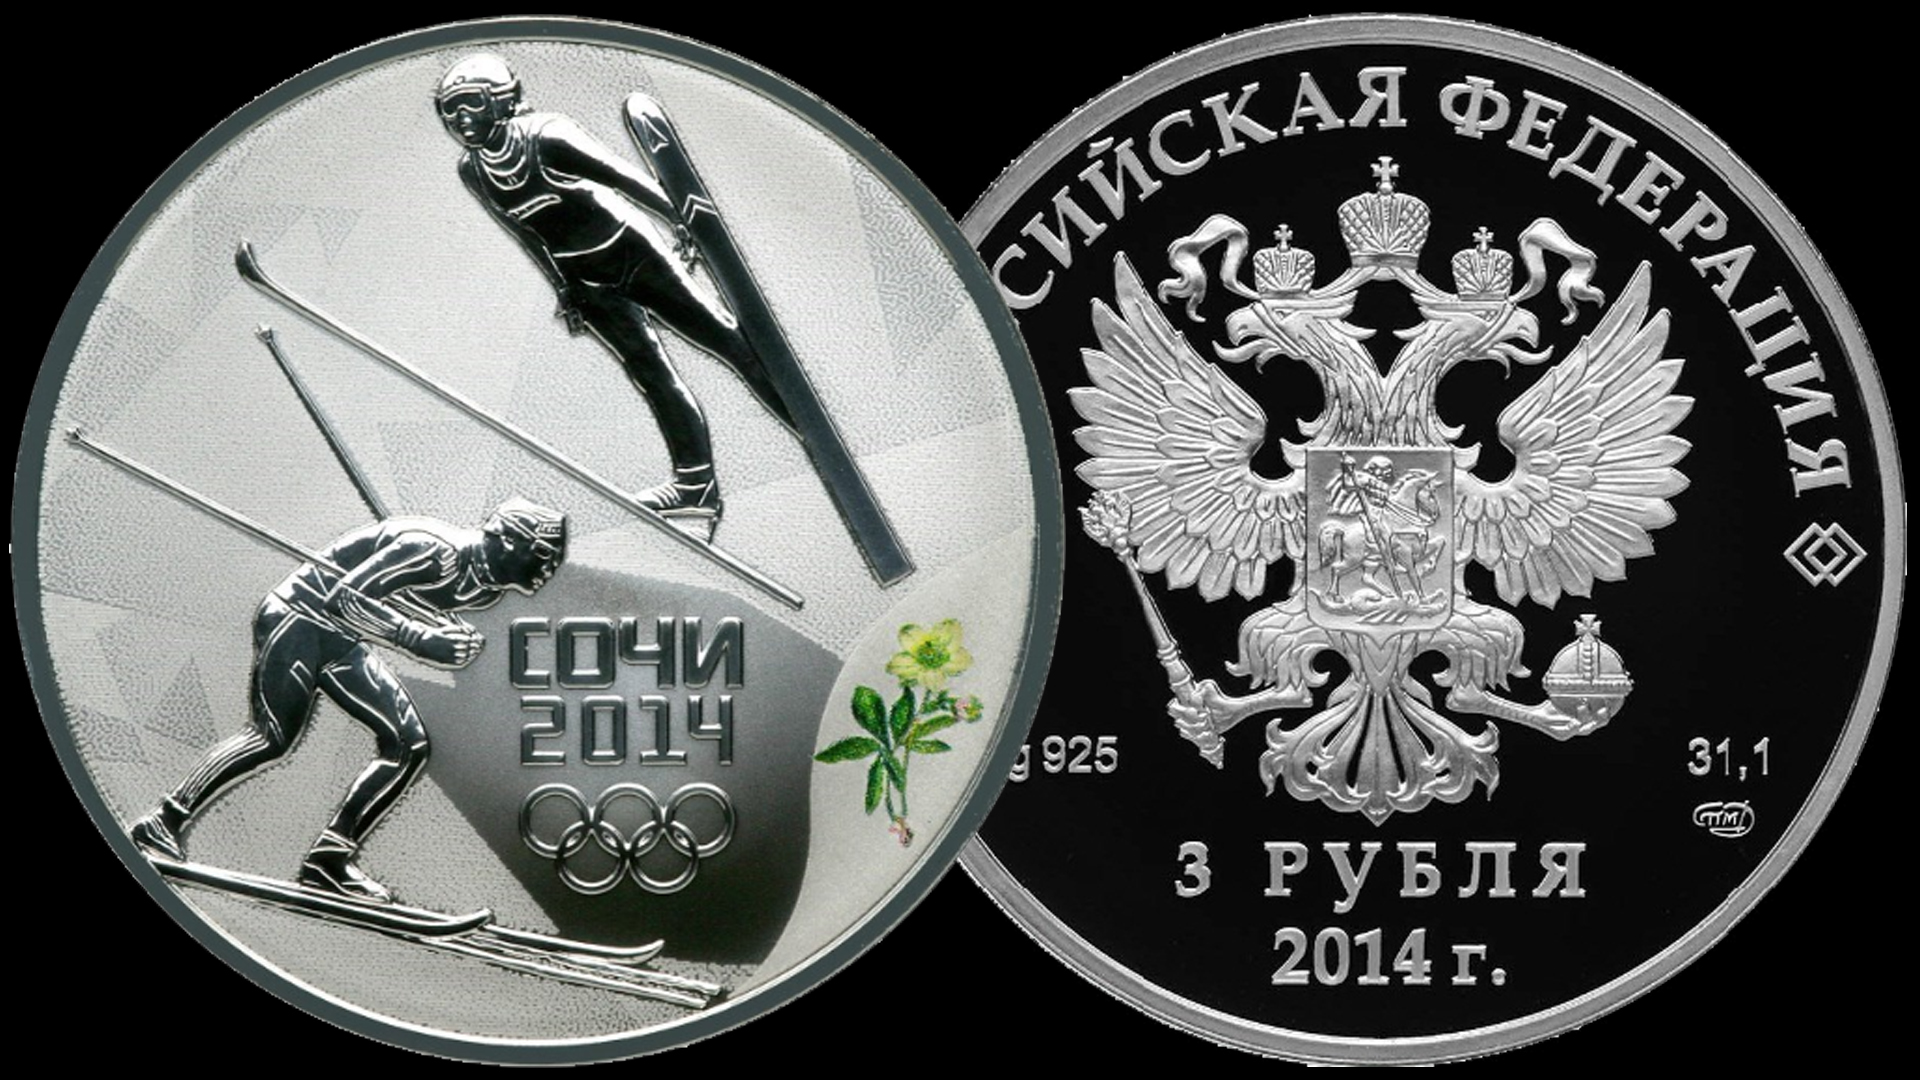 Серебряная монета 3 рубля Сочи 2014. Лыжное двоеборье. Третий выпуск 2013 год.